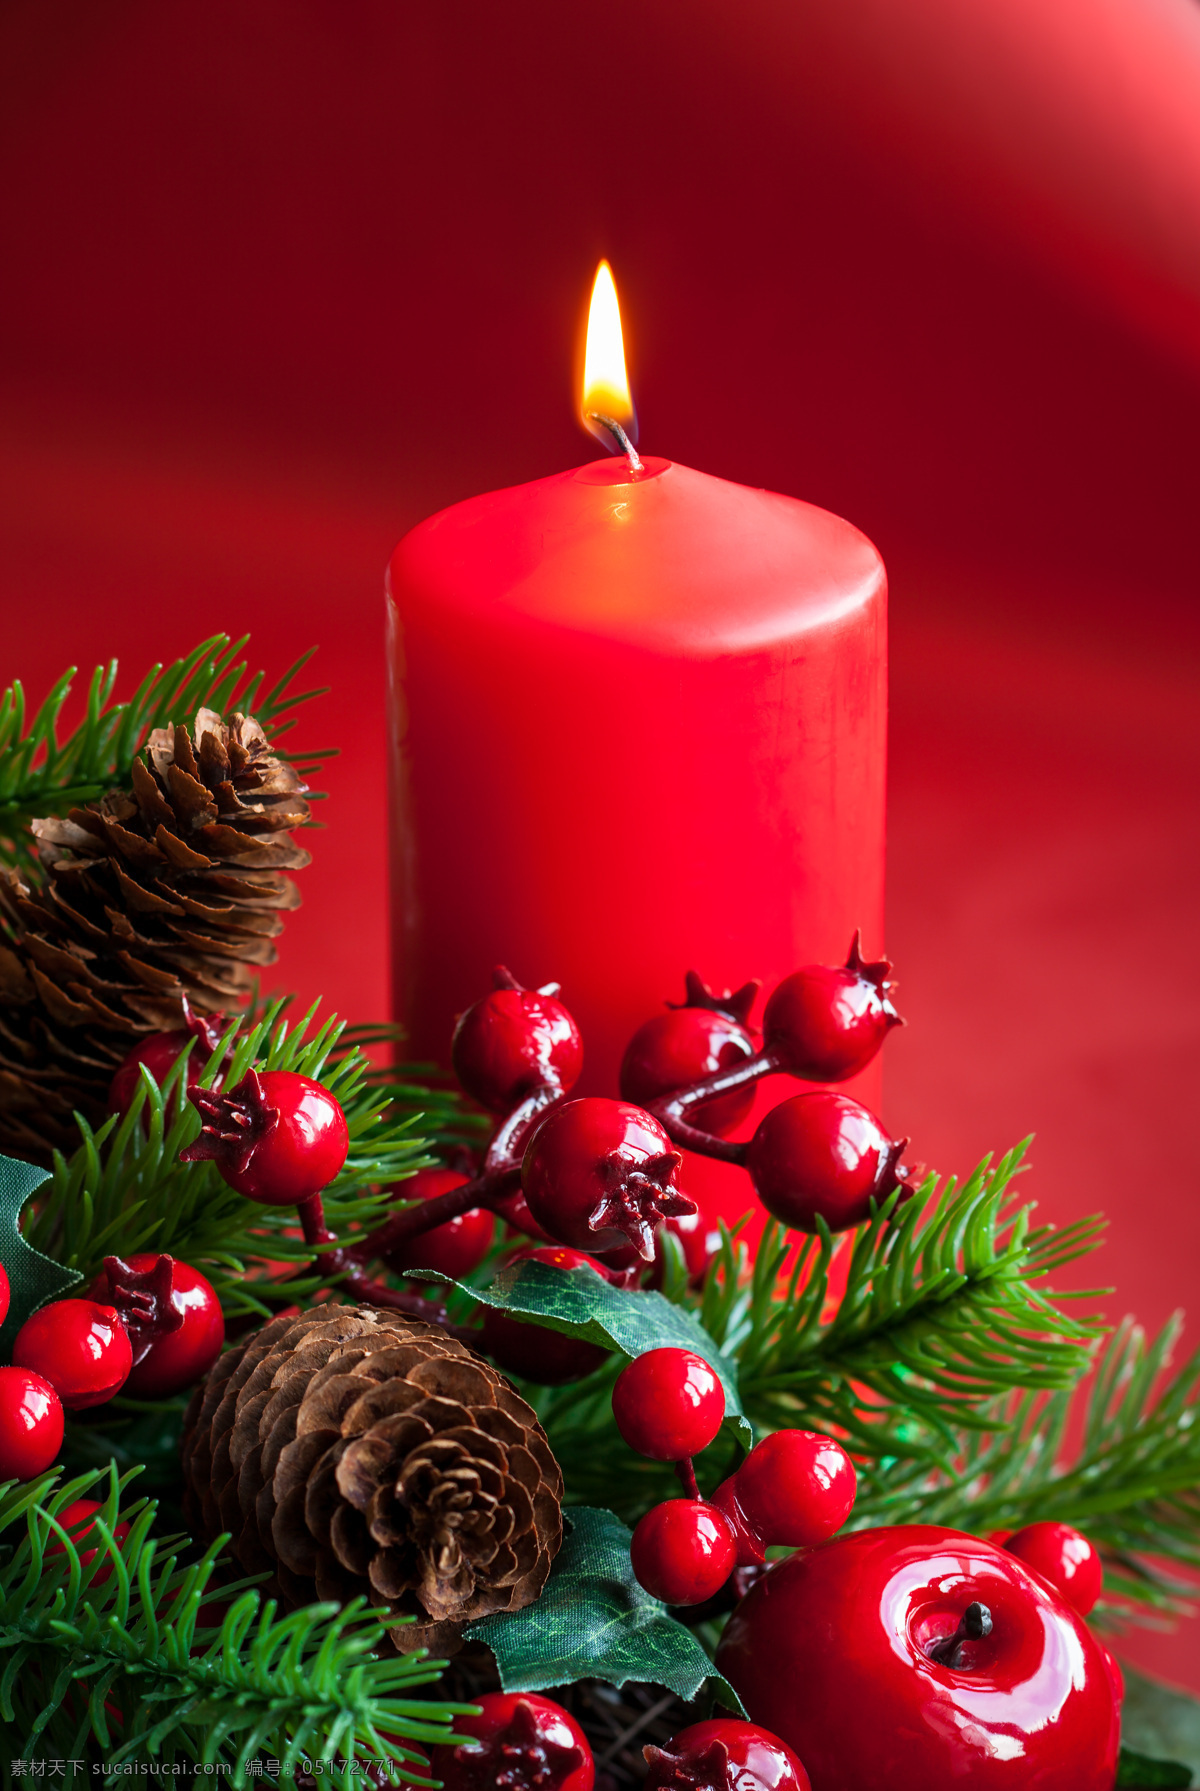 红色 蜡烛 浆果 圣诞节 圣诞节元素 松枝 节日庆典 生活百科